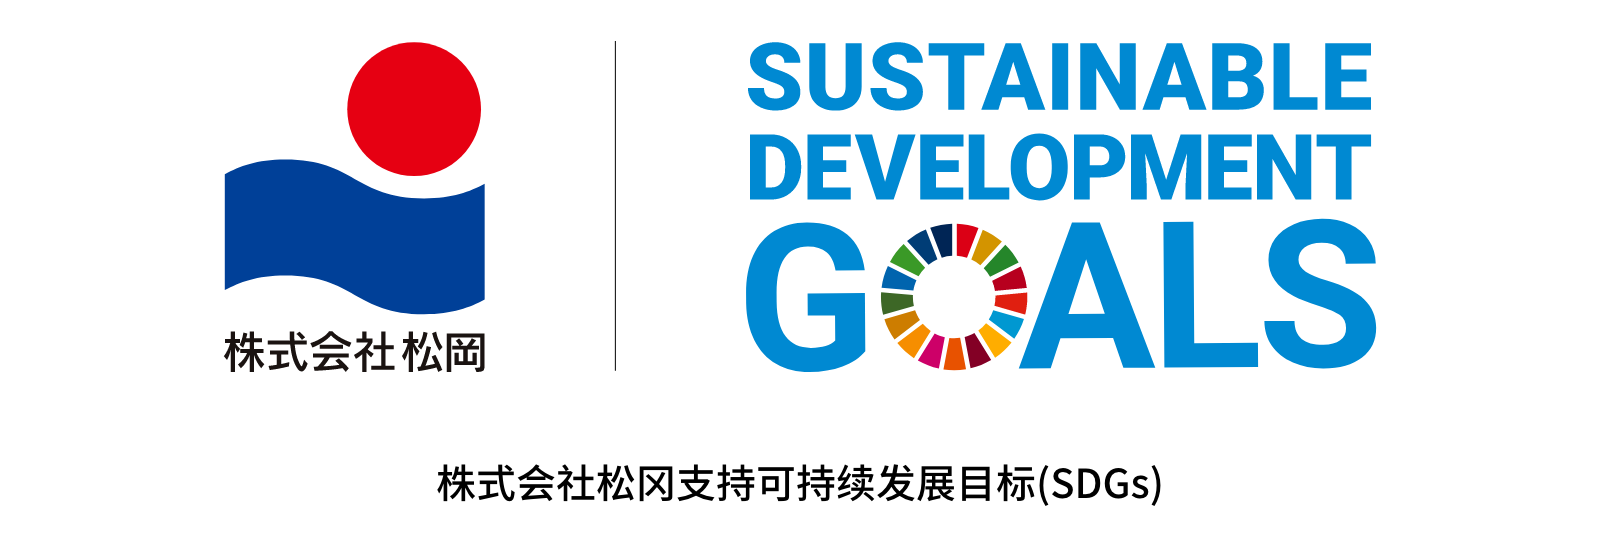 株式会社松冈 Sustainable Development Goals 株式会社松冈支持可持续发展目标(SDGs)。